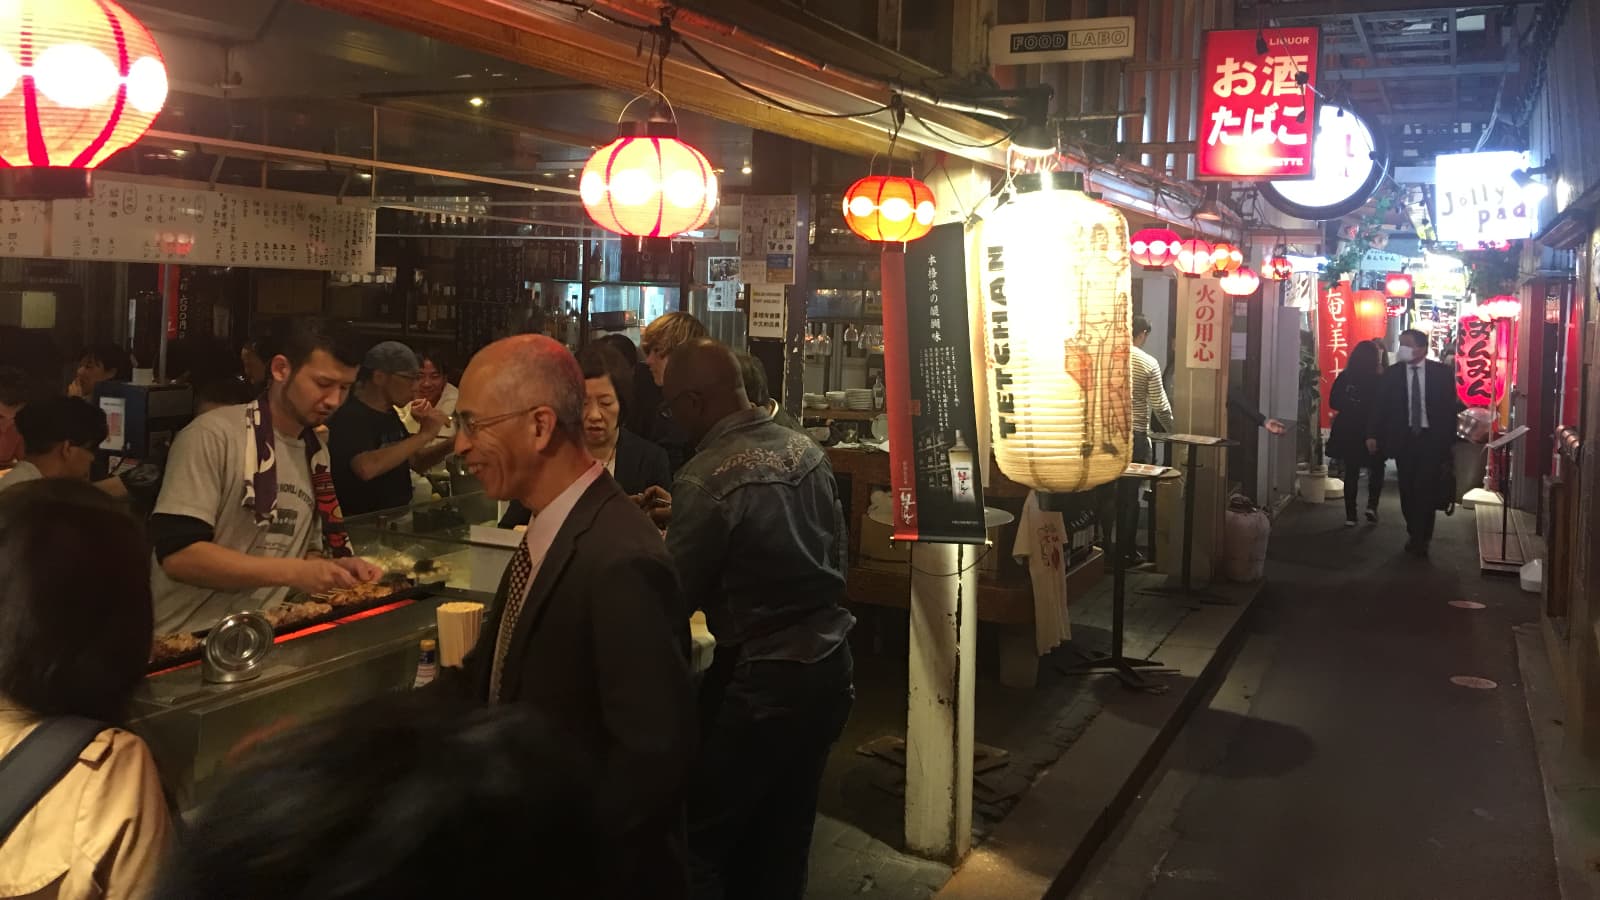 Harmonica Yokocho, a tiny Kichijoji street full of delicious food at izakaya and yakitori restaurants